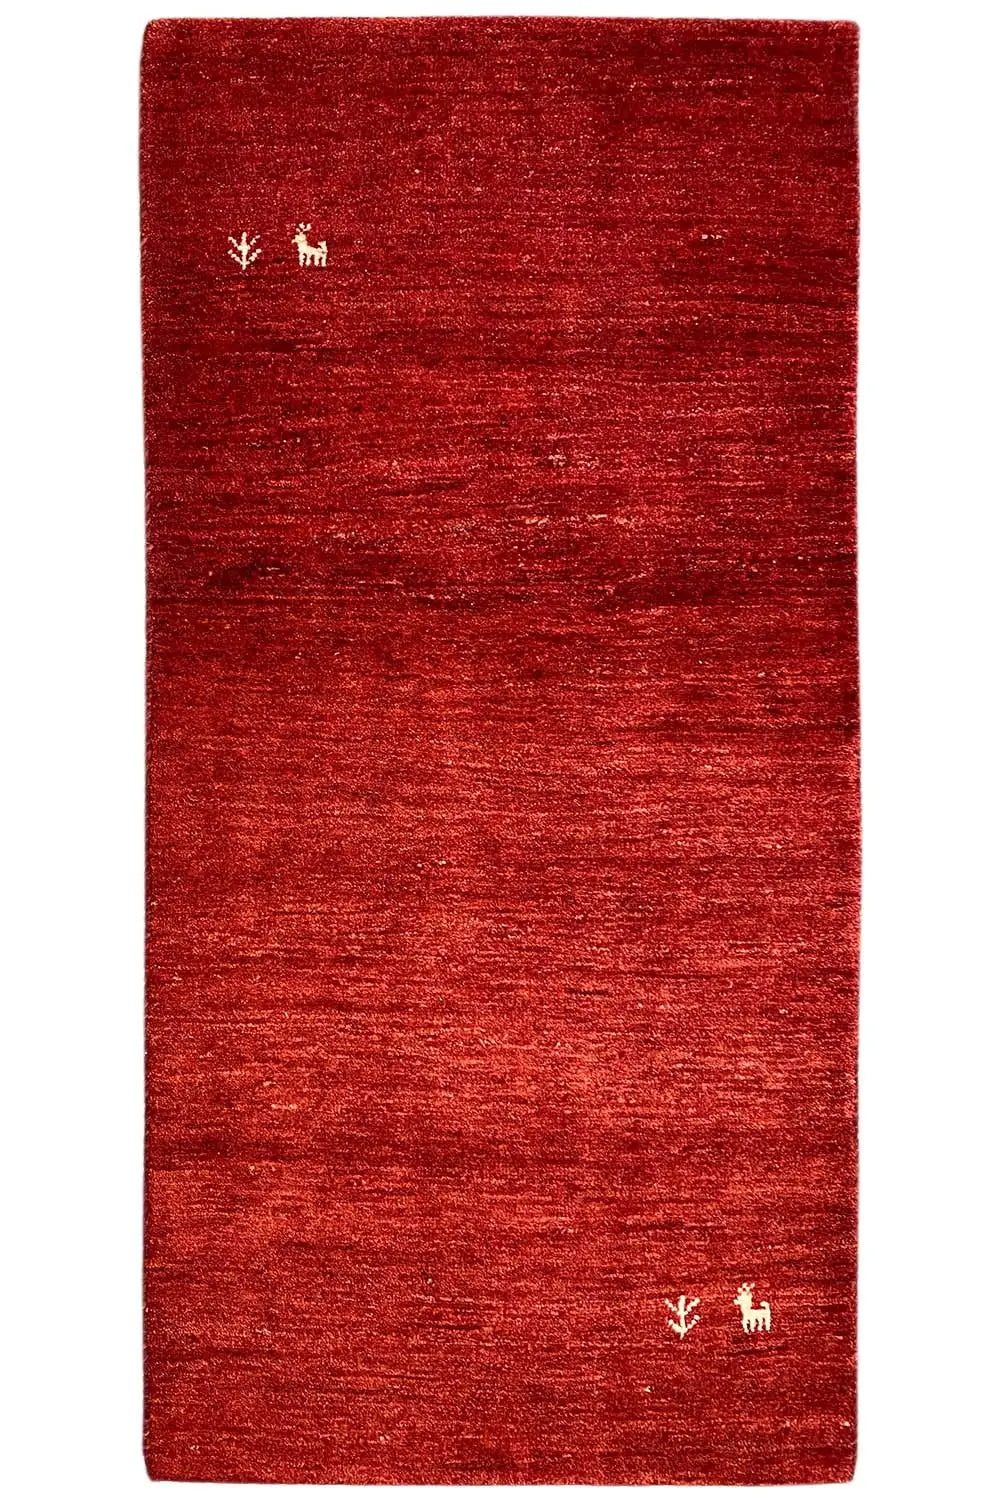 Gabbeh - (142x69cm) - German Carpet Shop